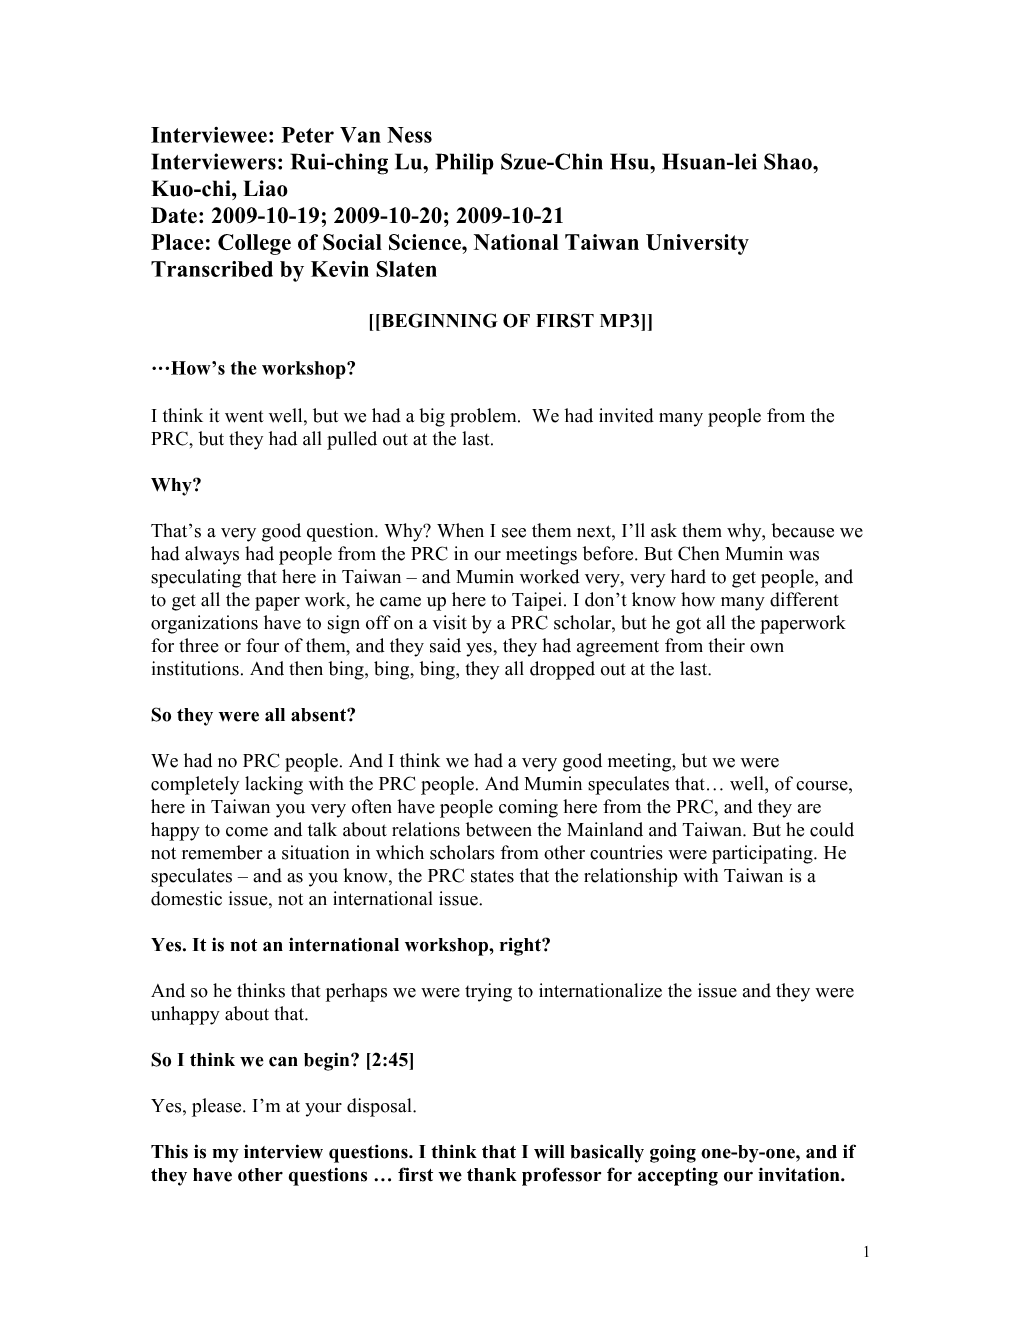 Peter Van Ness Interview Transcript